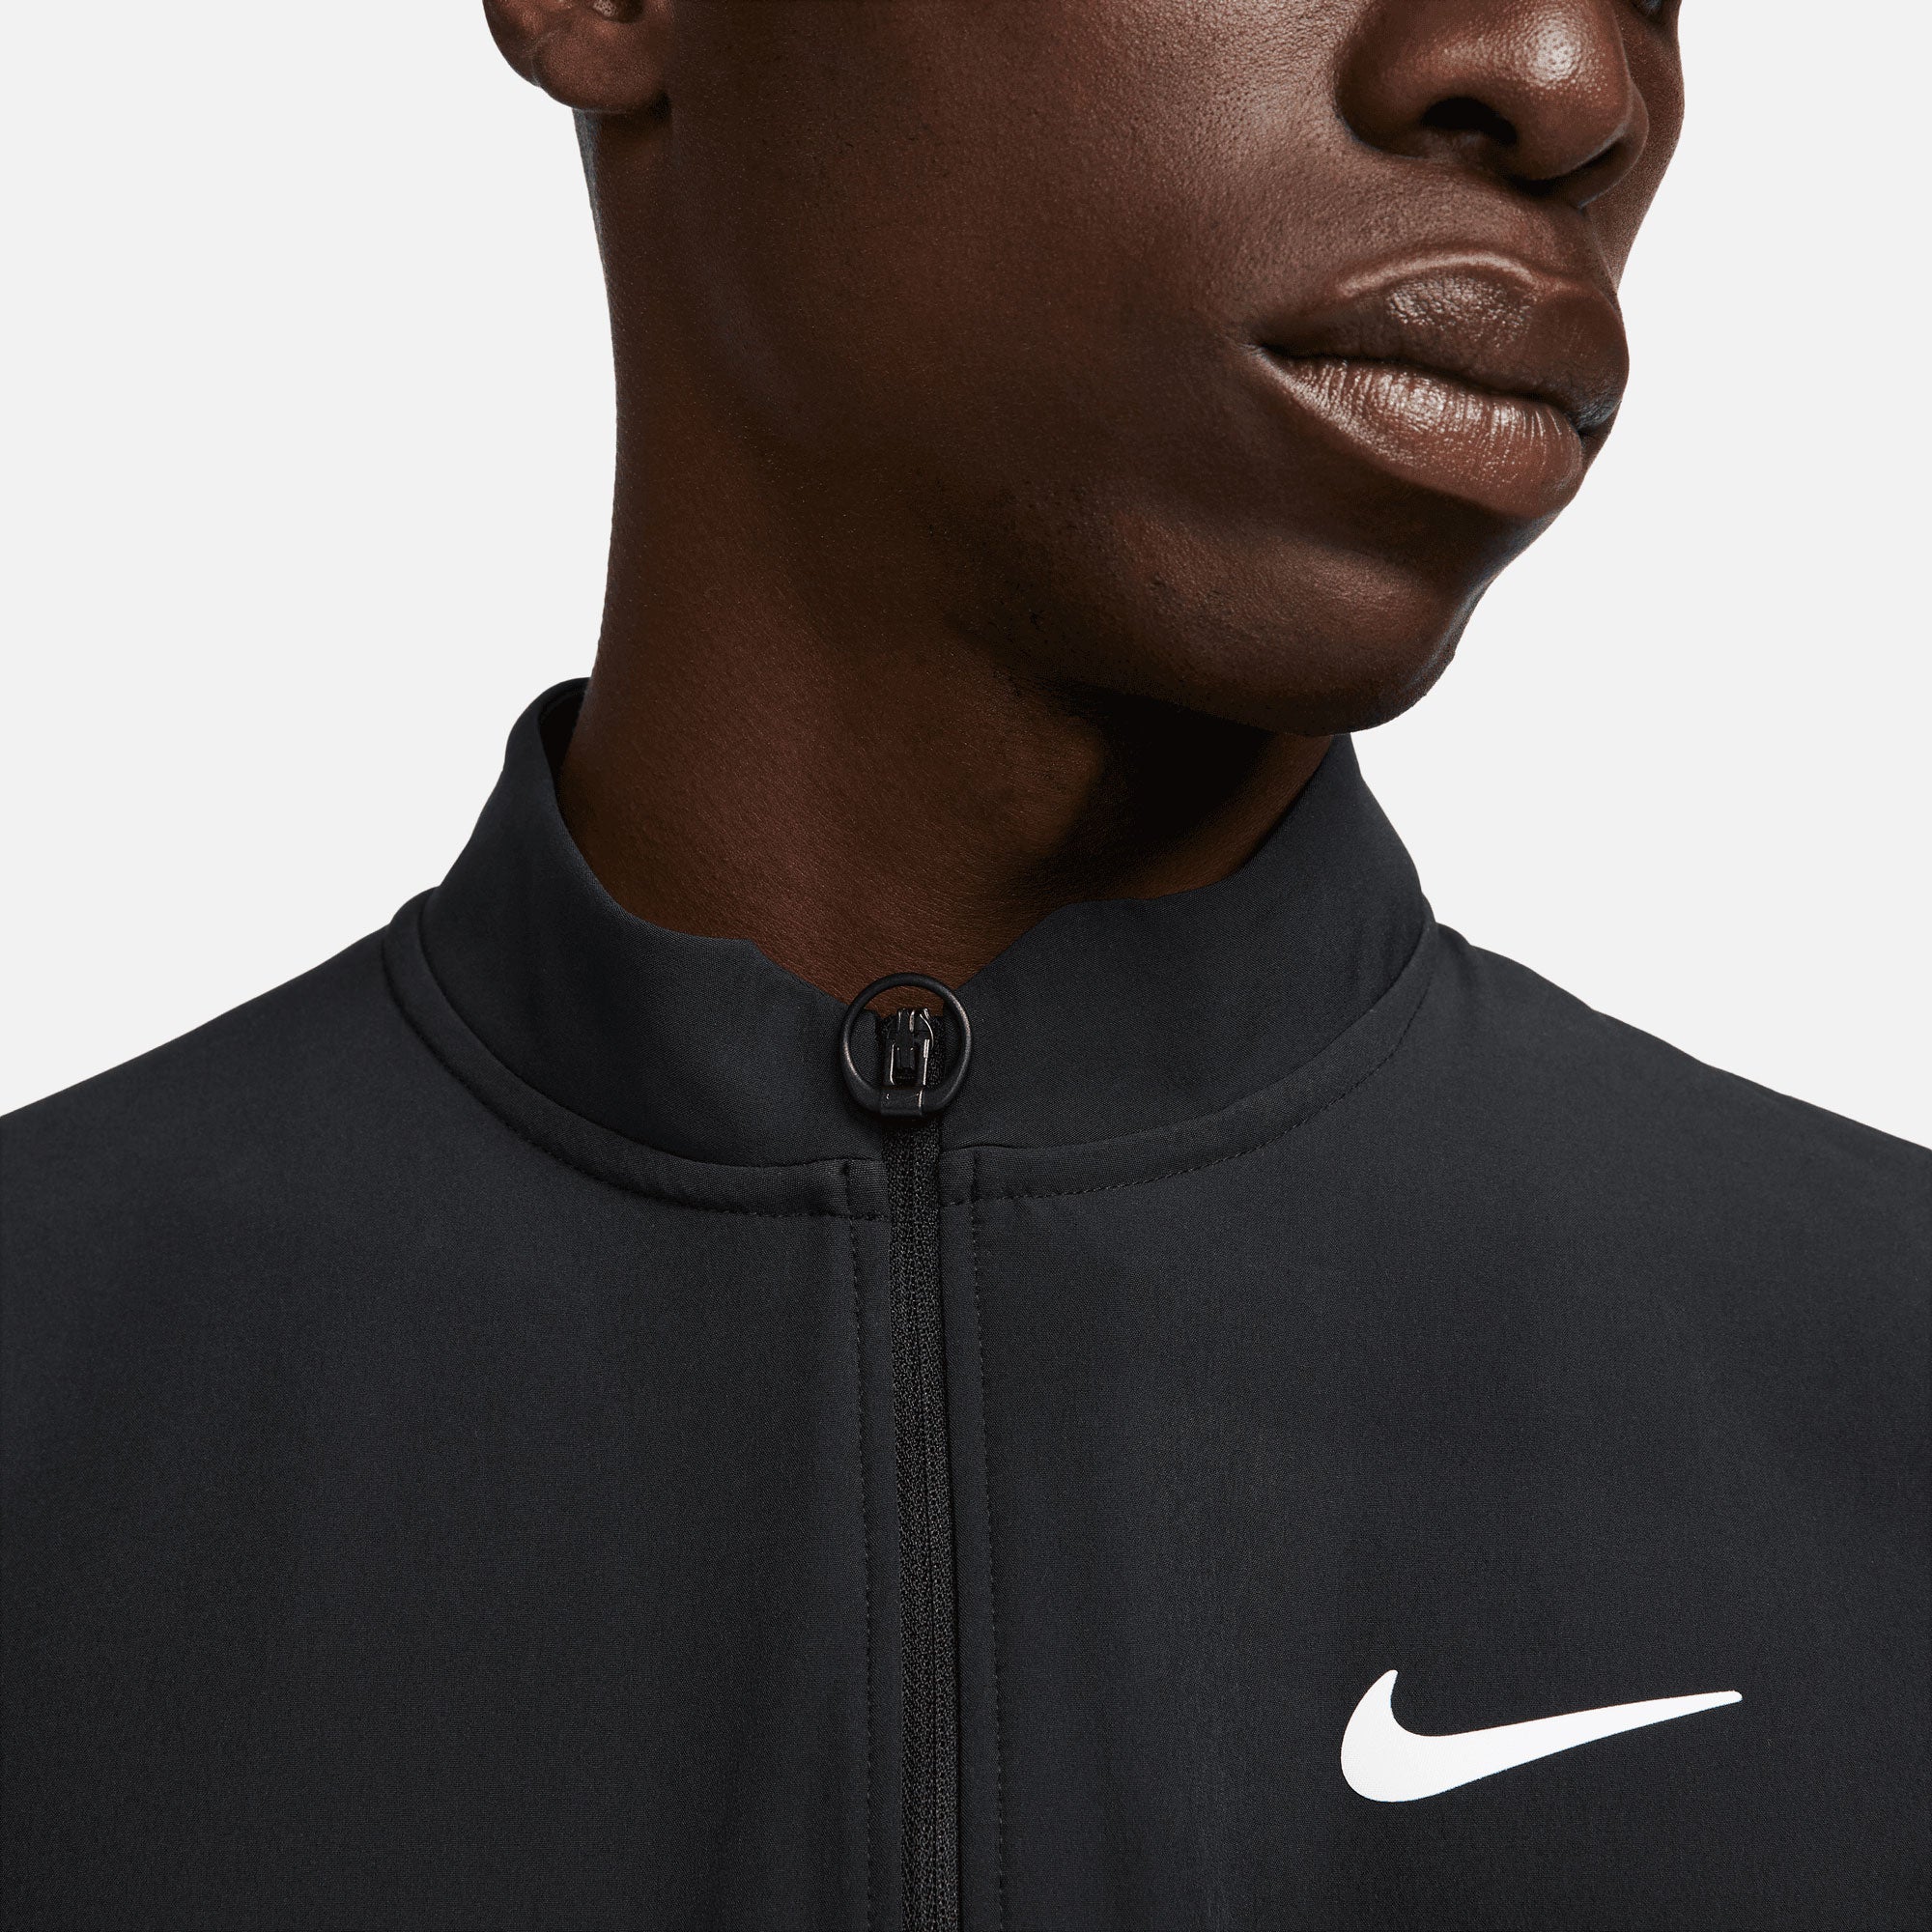 NikeCourt Advantage Men's Packable Tennis Jacket Black (3)